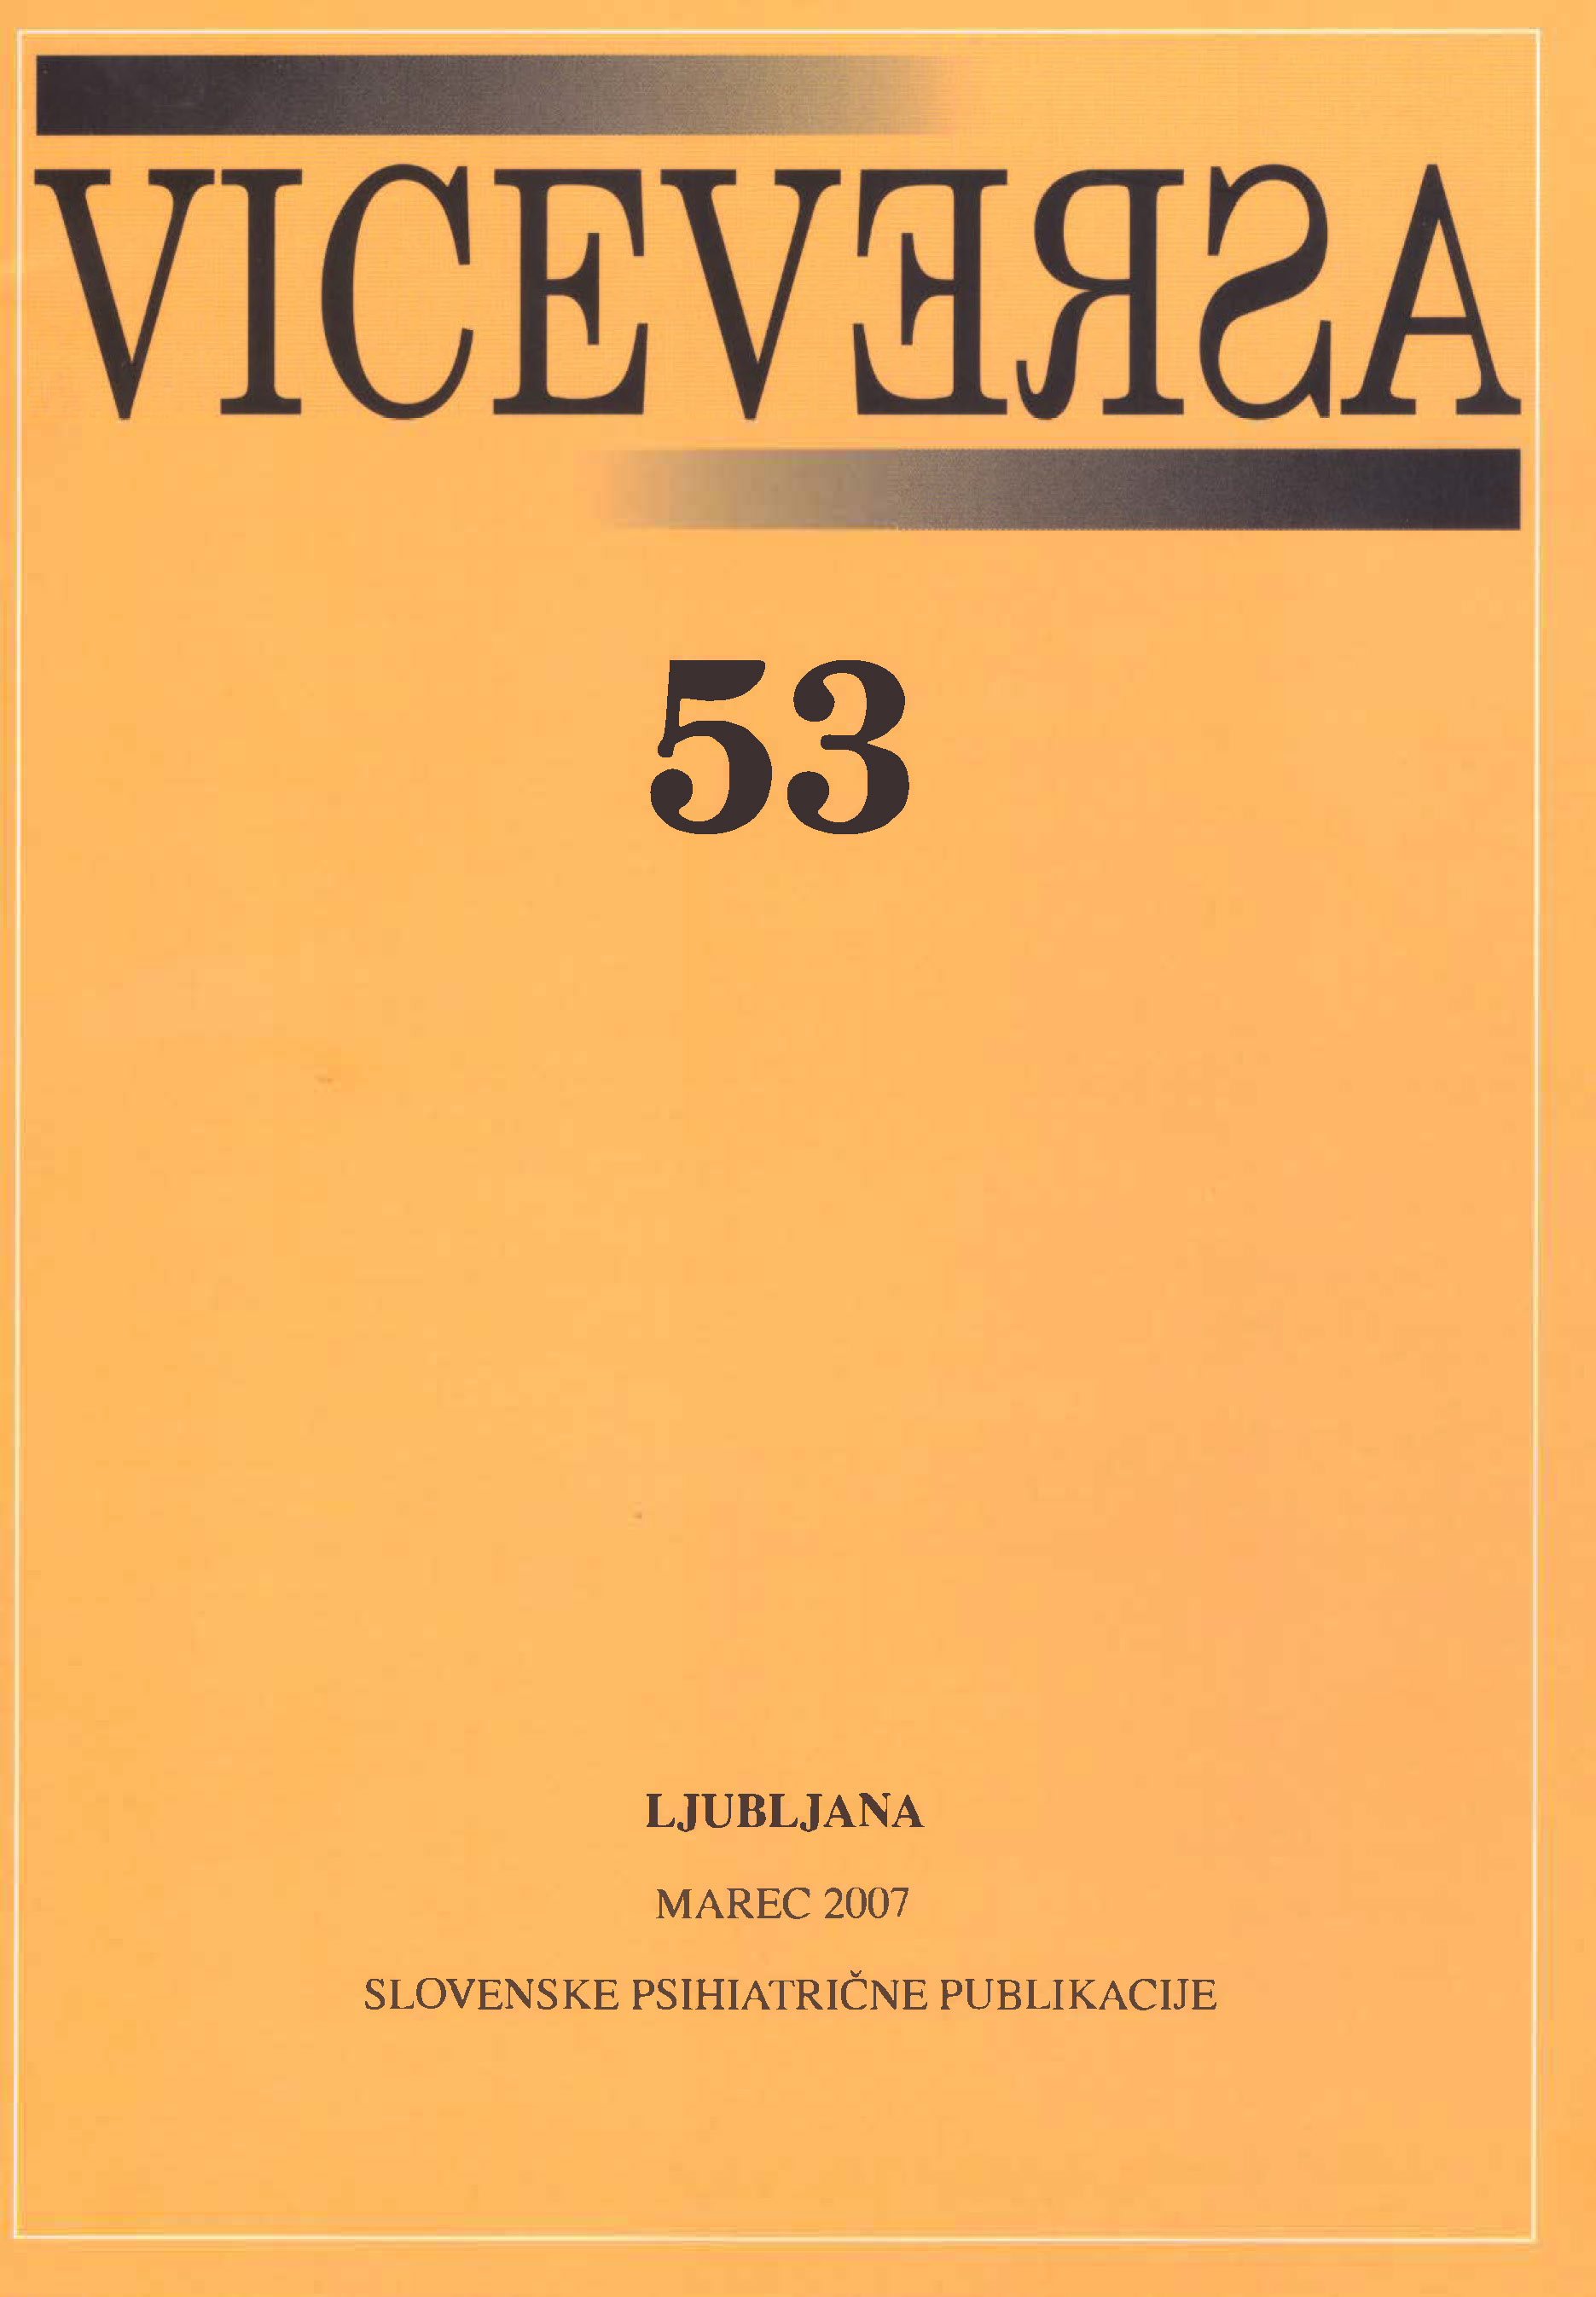 					Poglej Letn. 16 Št. 53 (2007): VICEVERSA
				